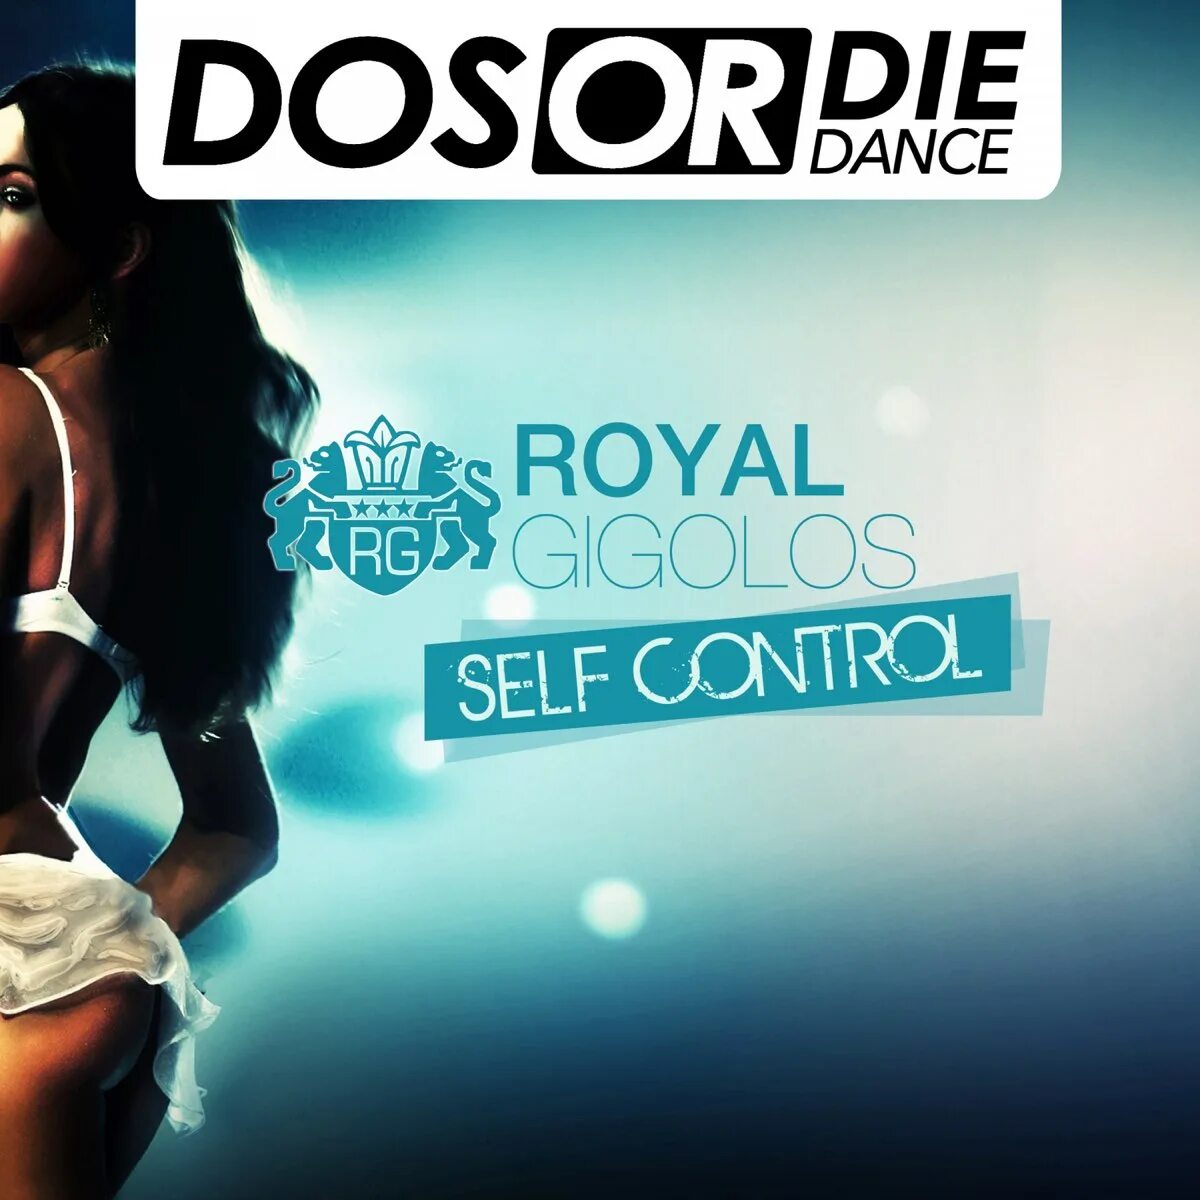 Royal Gigolos. Self Control. Royal Gigolos Band. Self Control (Radio Edit).